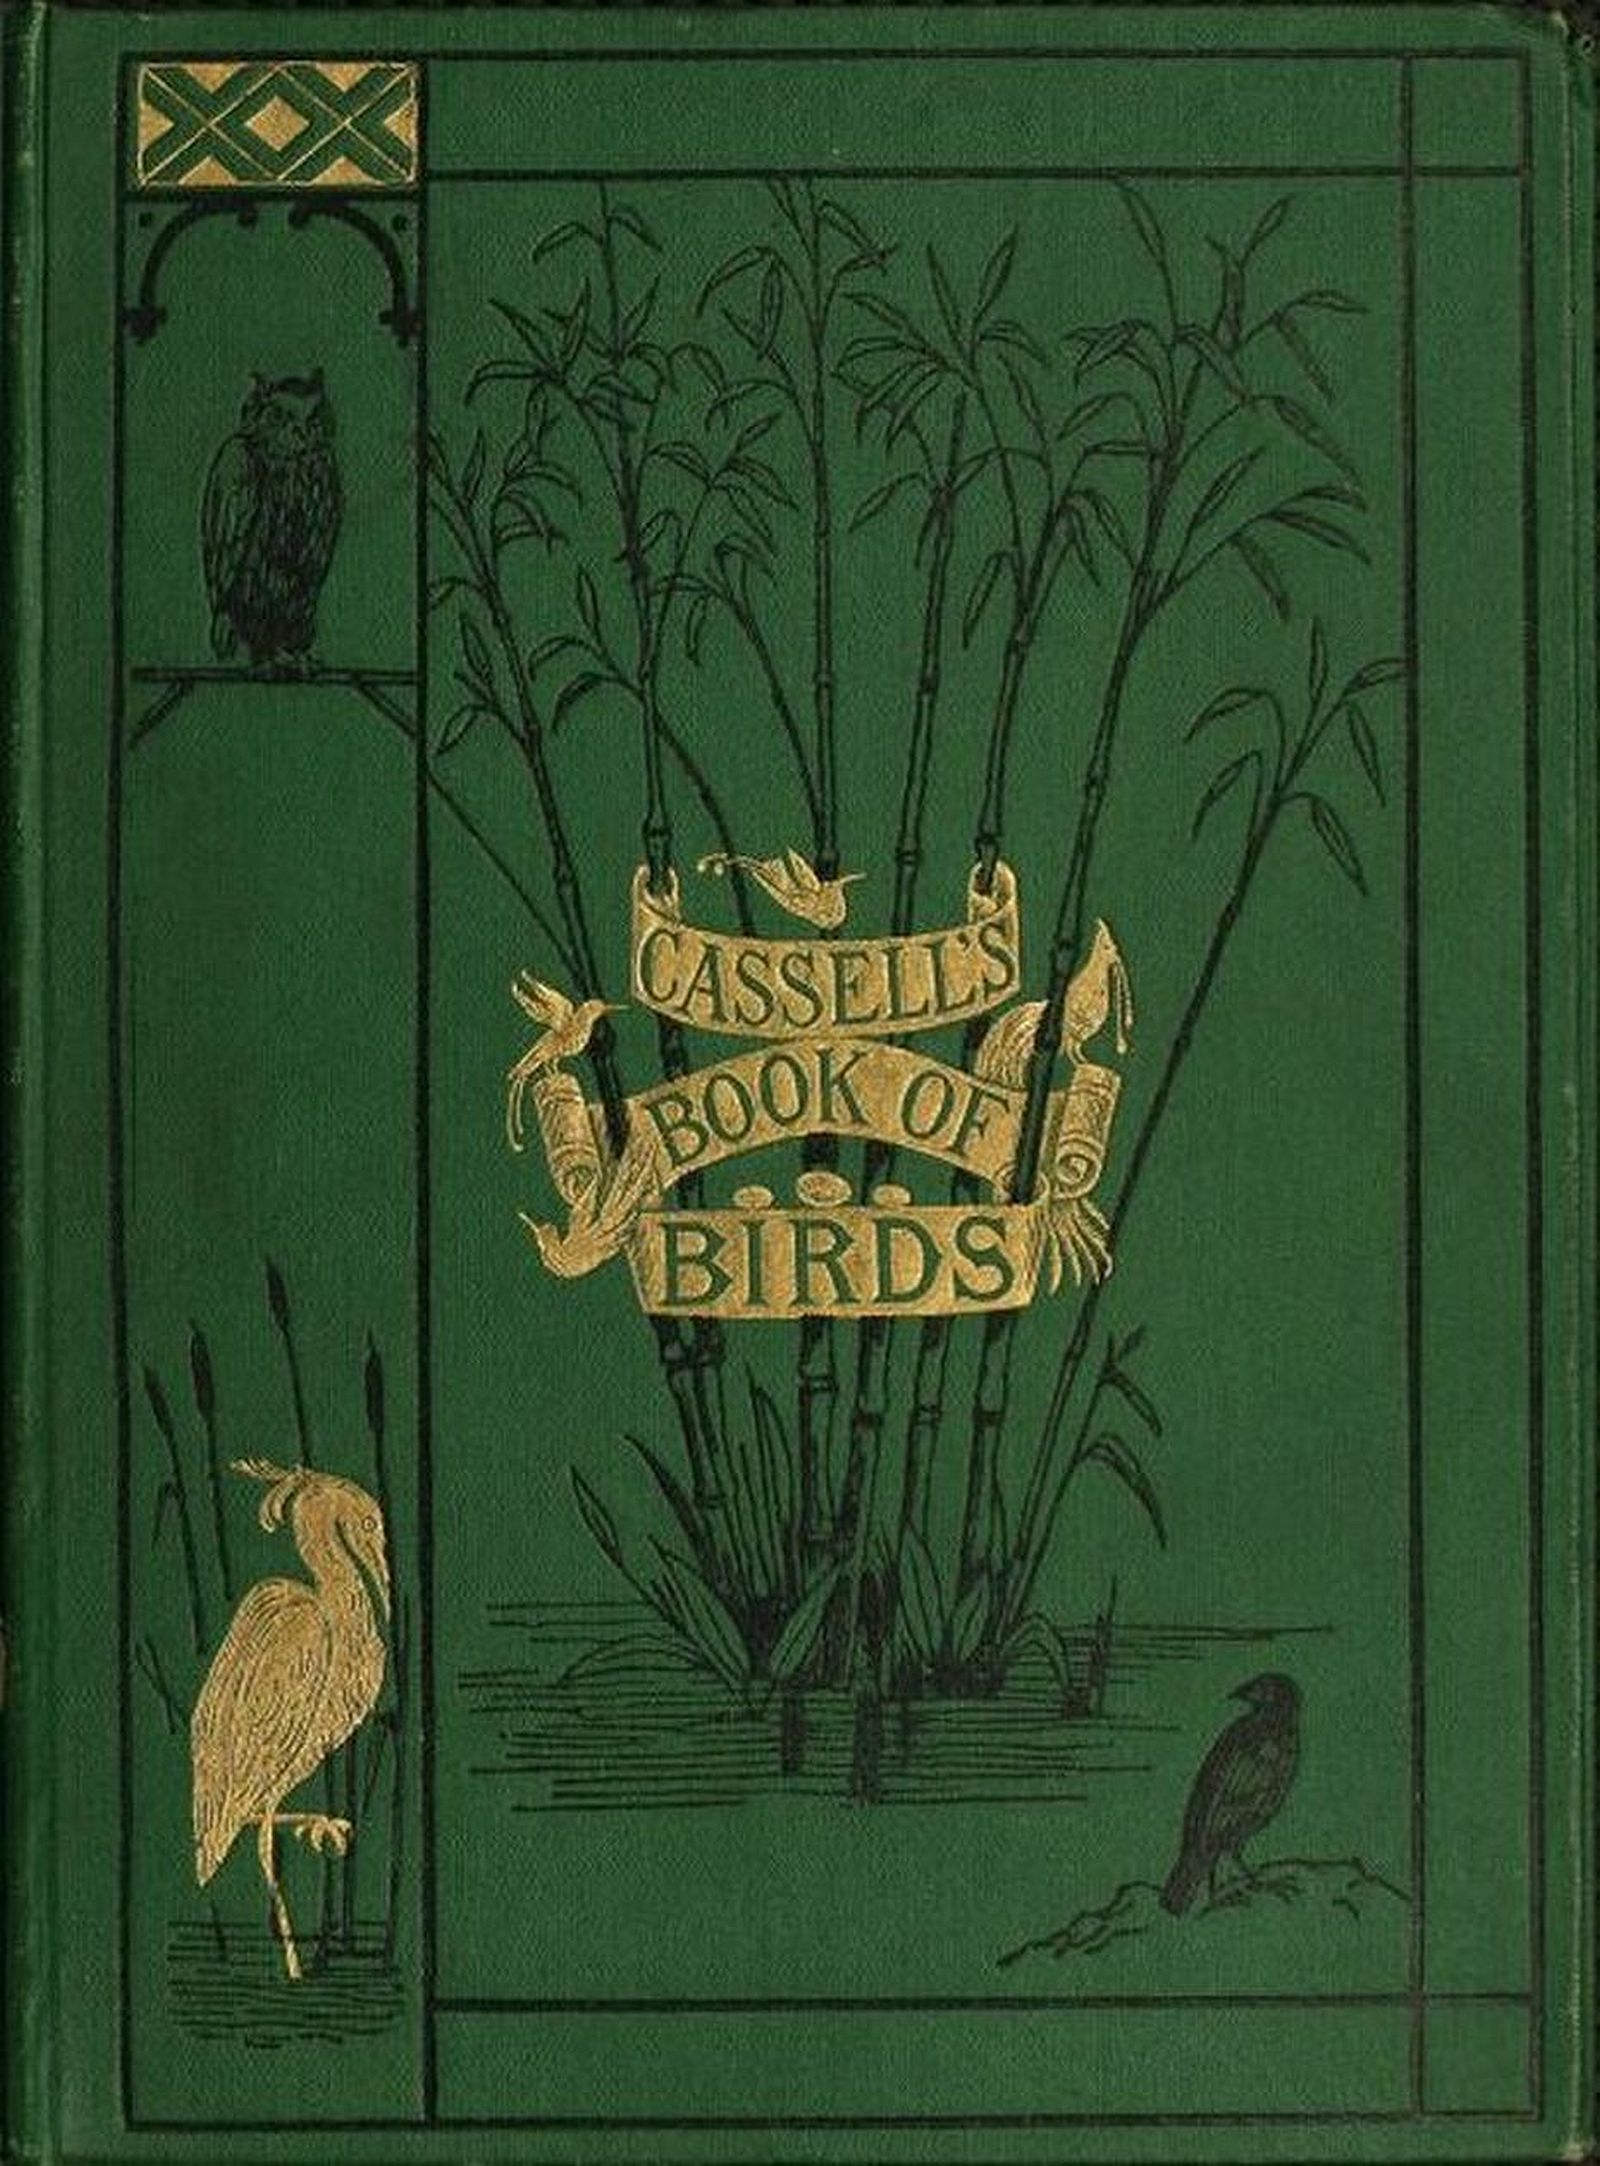 Cassell's book of birds; vol. 4